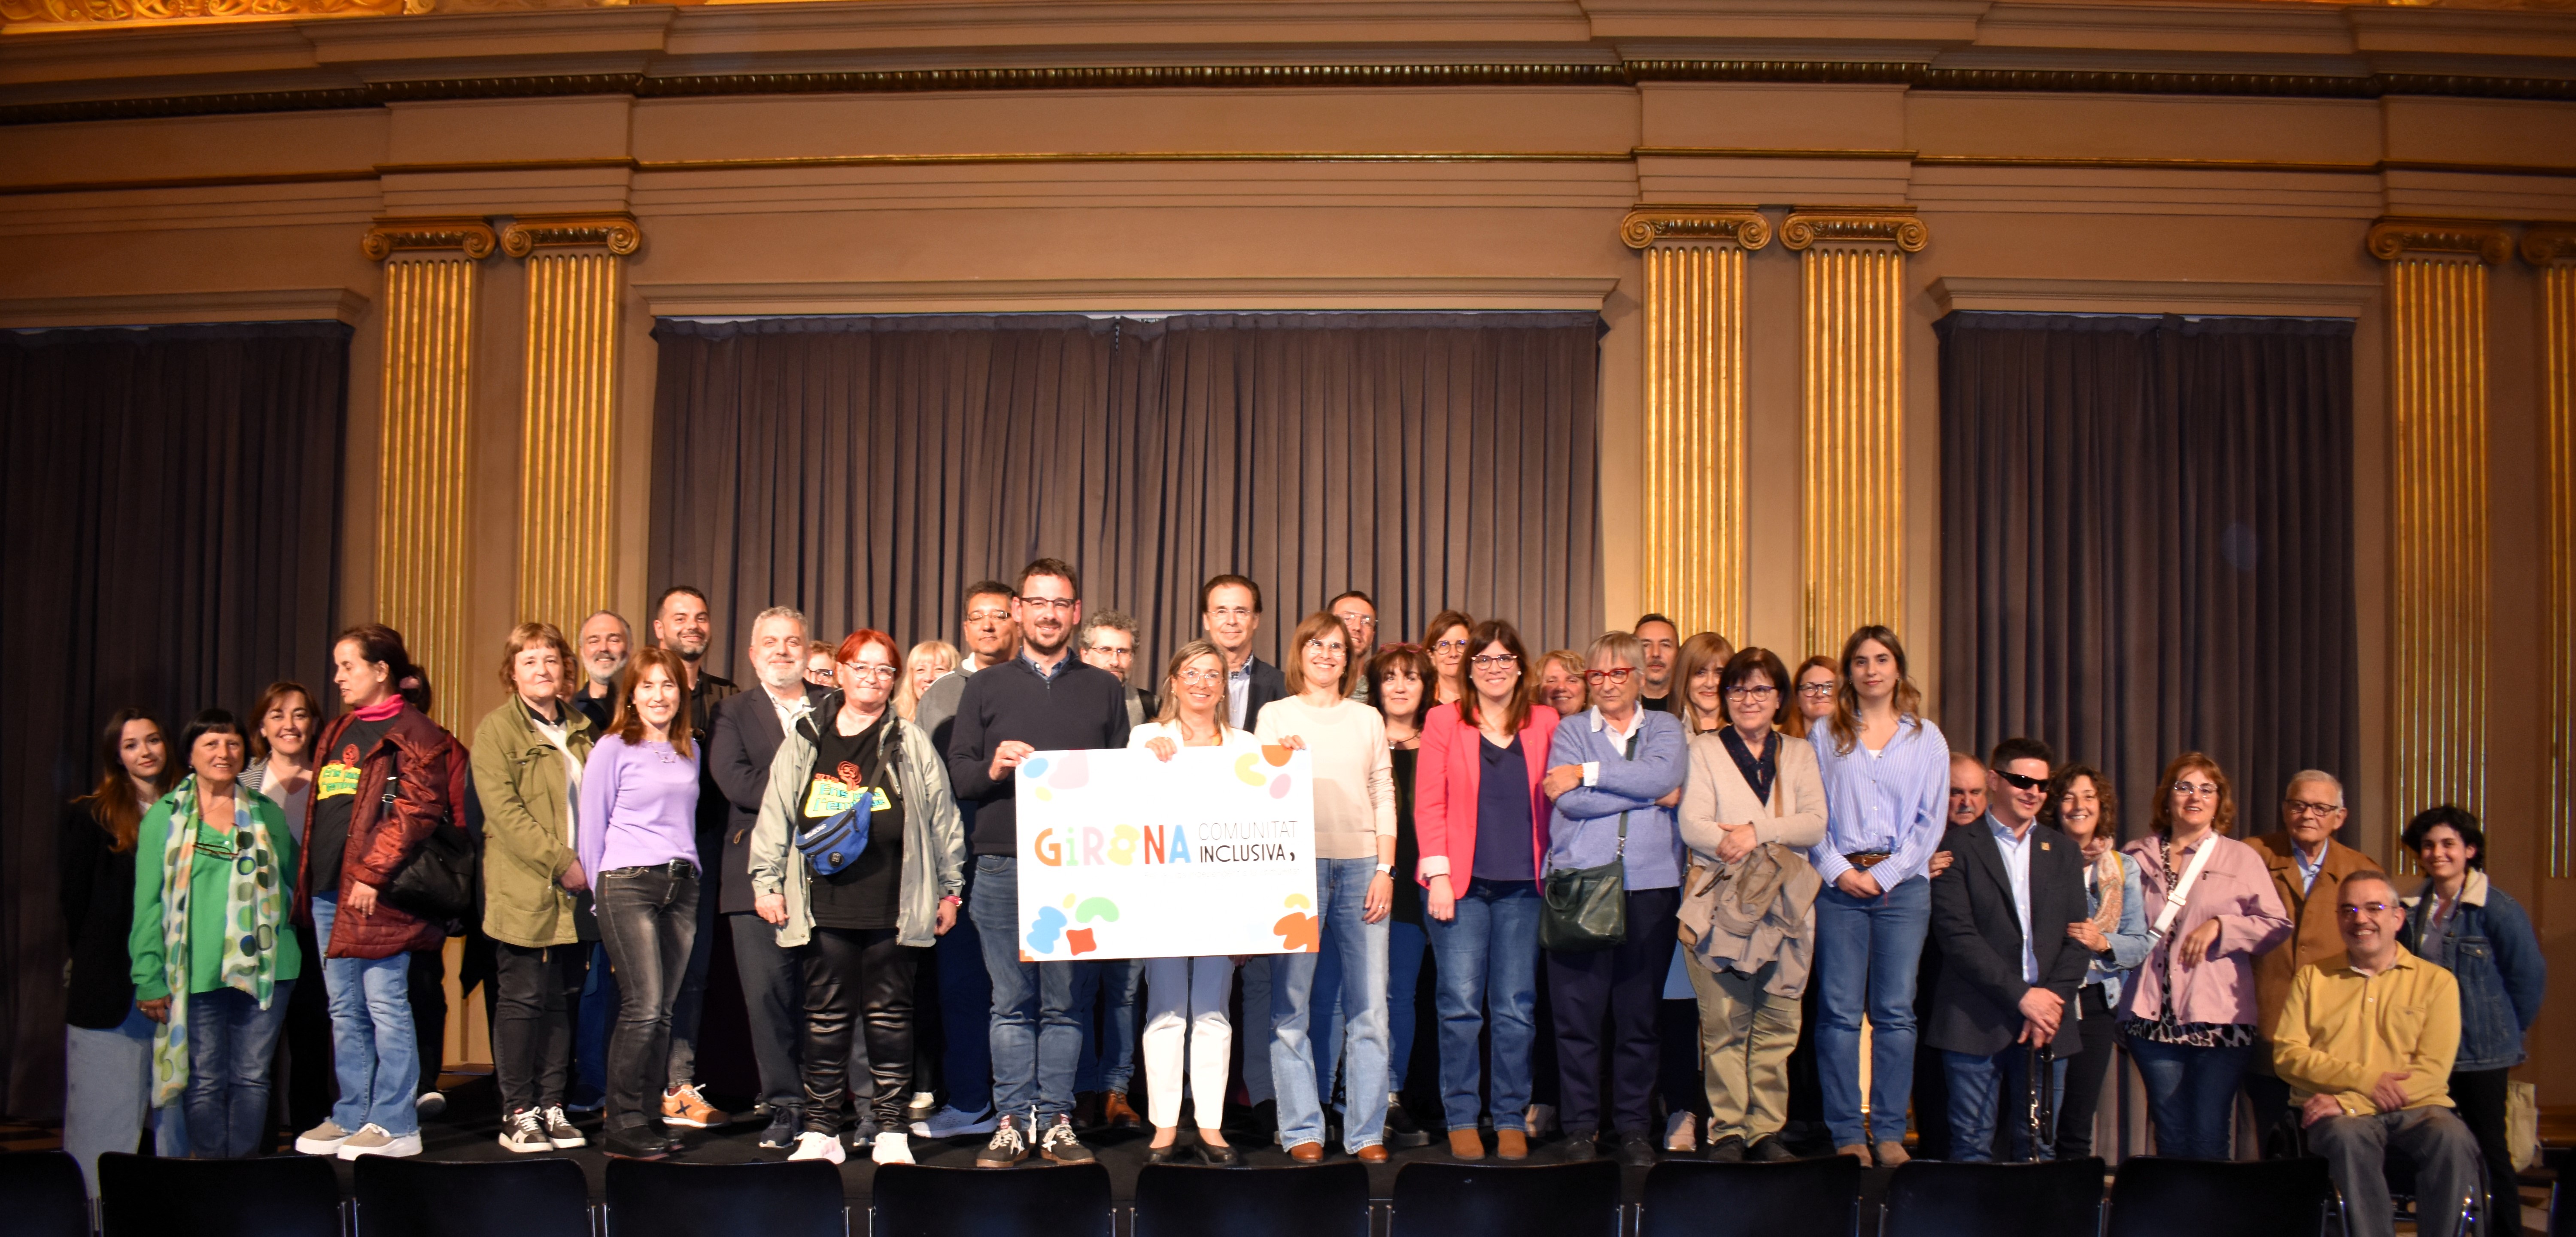 Representants de l'Espai Girona Comunitat Inclusiva, amb l'alcalde de Girona i regidors, mostrant la marca "Girona Ciutat inclusiva"